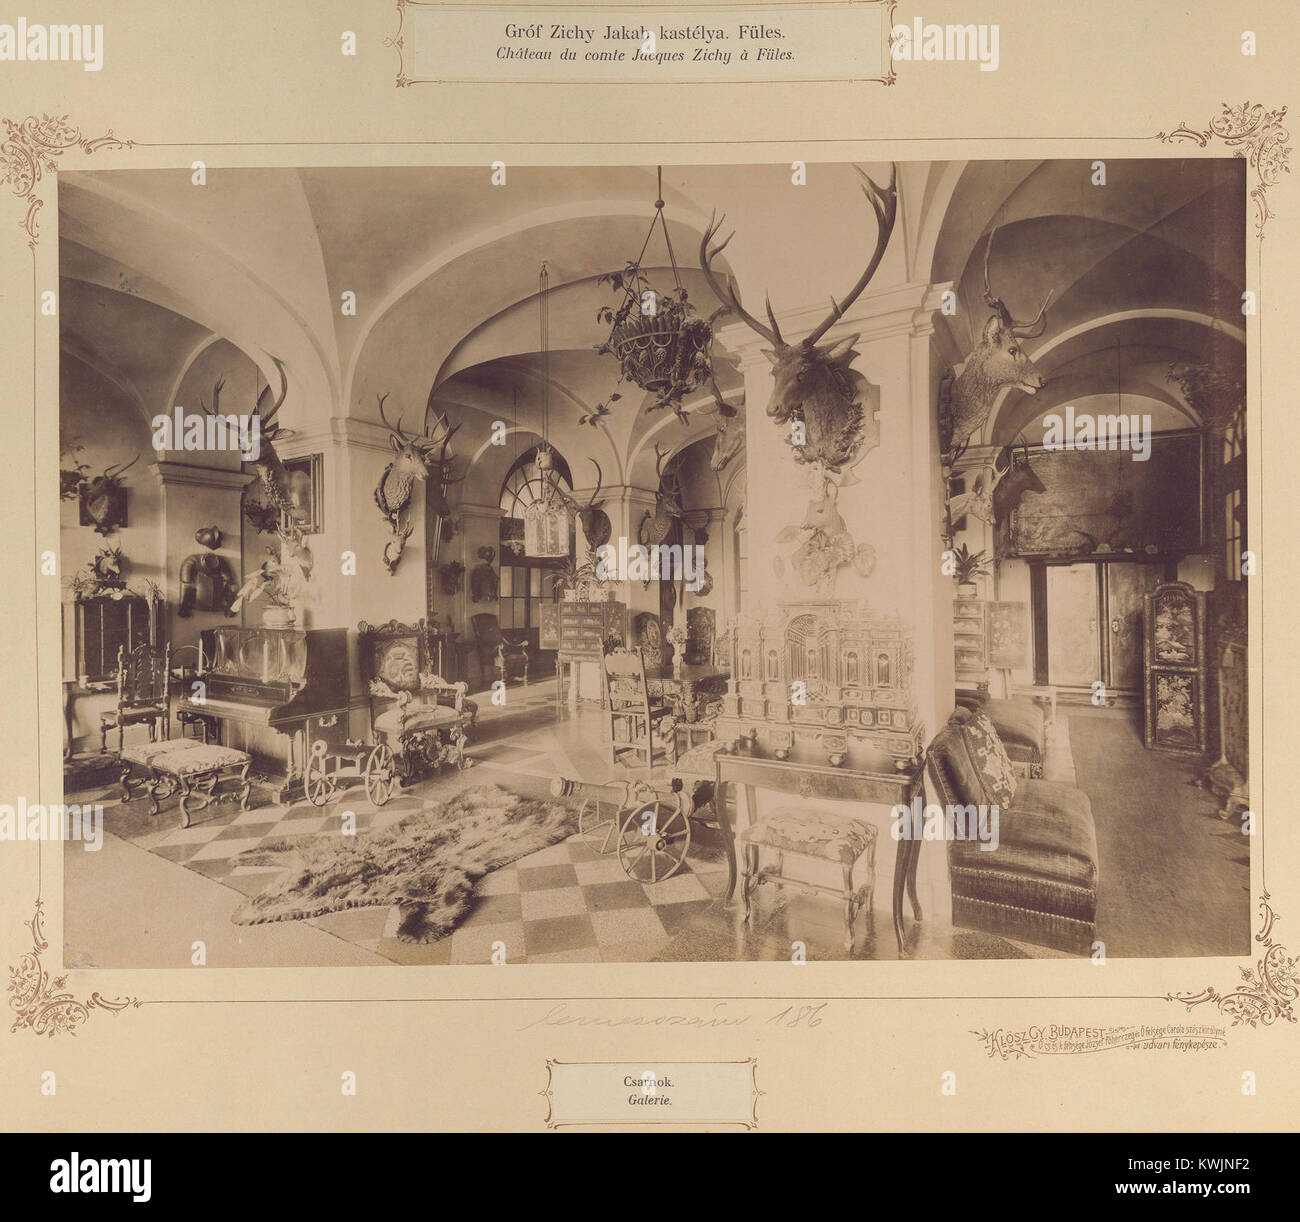 Zichy-Meskó - kastély. Eine felvétel között készült 1895-1899. Eine kép forrását kérjük so adja meg-fortepan - Budapest főváros Levéltára. 0070 Stockfoto